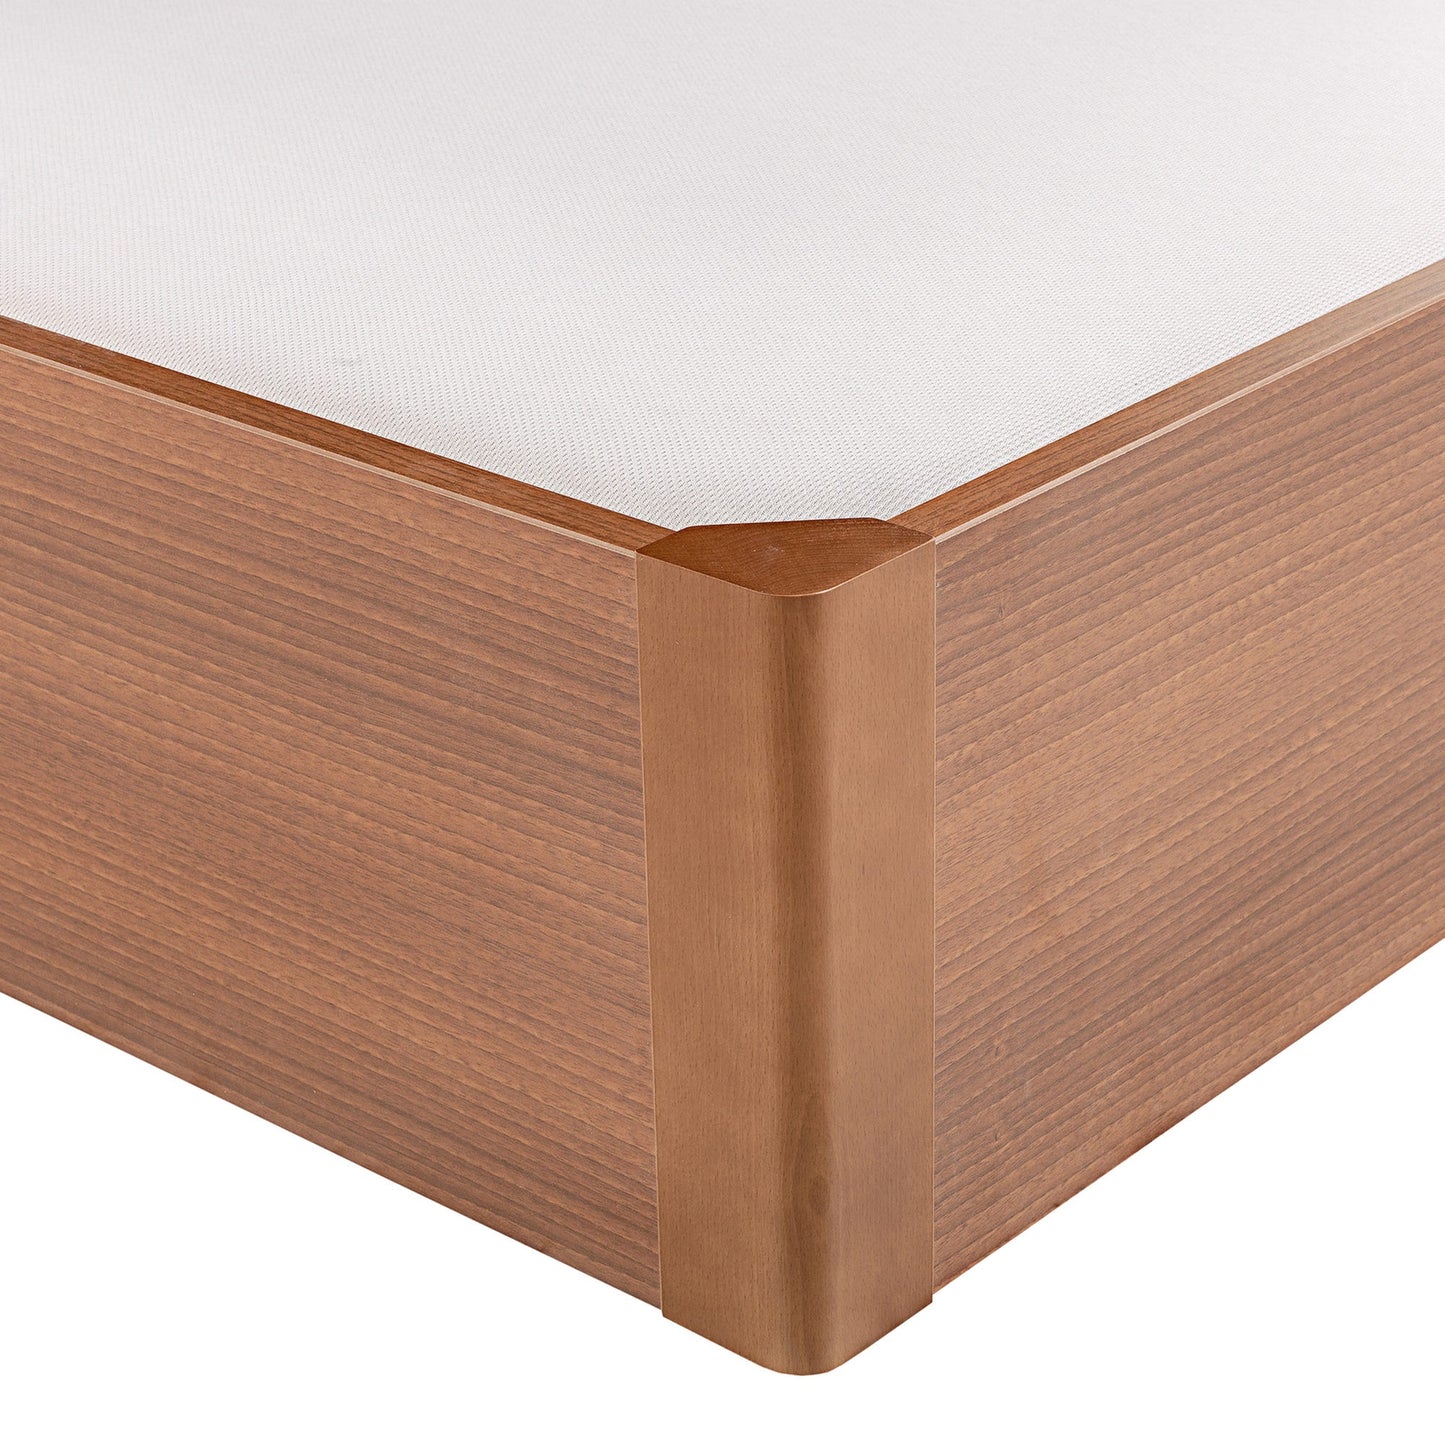 Canapé abatible de madera tapa única de color cerezo - DESIGN - 90x210